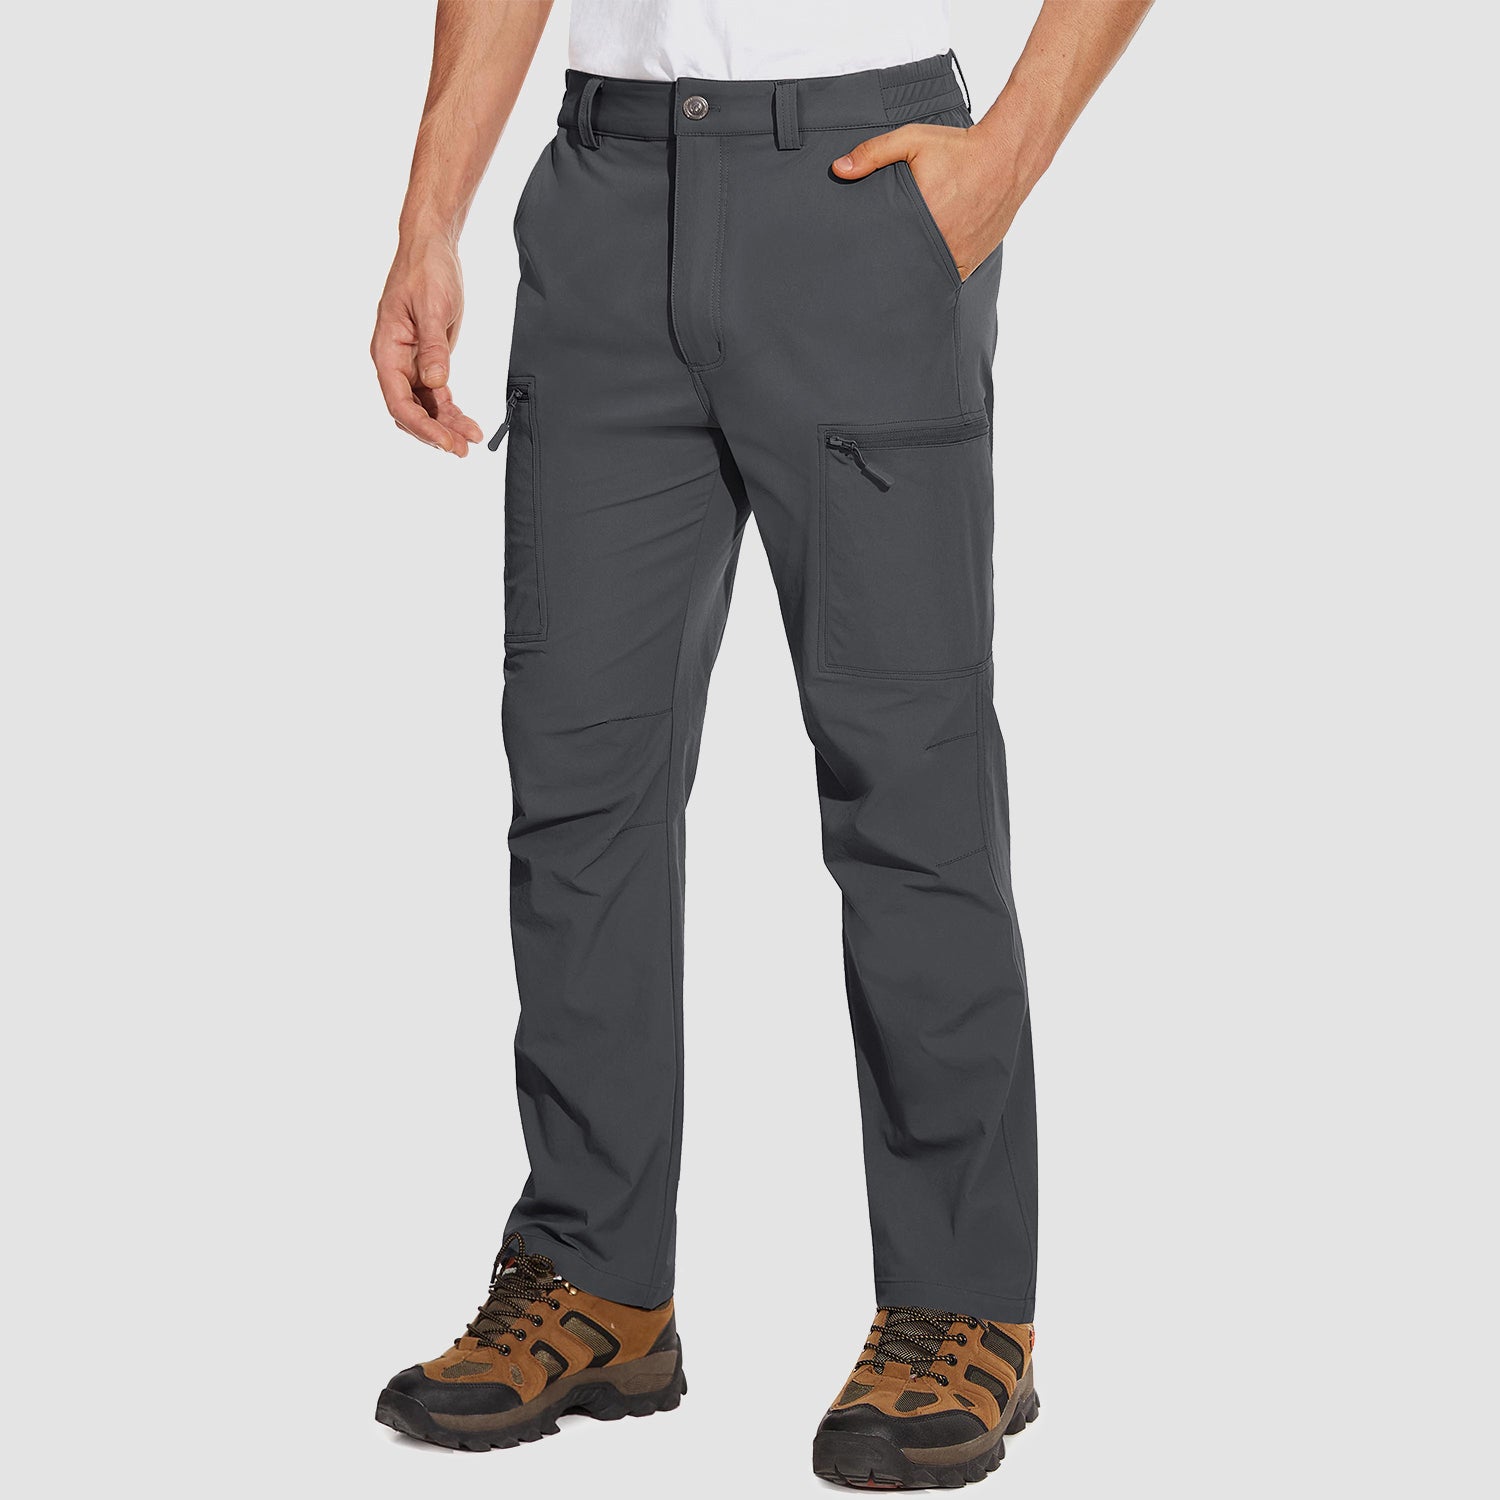 Men's Fleece Lined Cargo Pants Camo Hiking Tactical Ripstop Pants Winter  Outdoor Work Cargo Pants with 8 Pockets (No Belt)